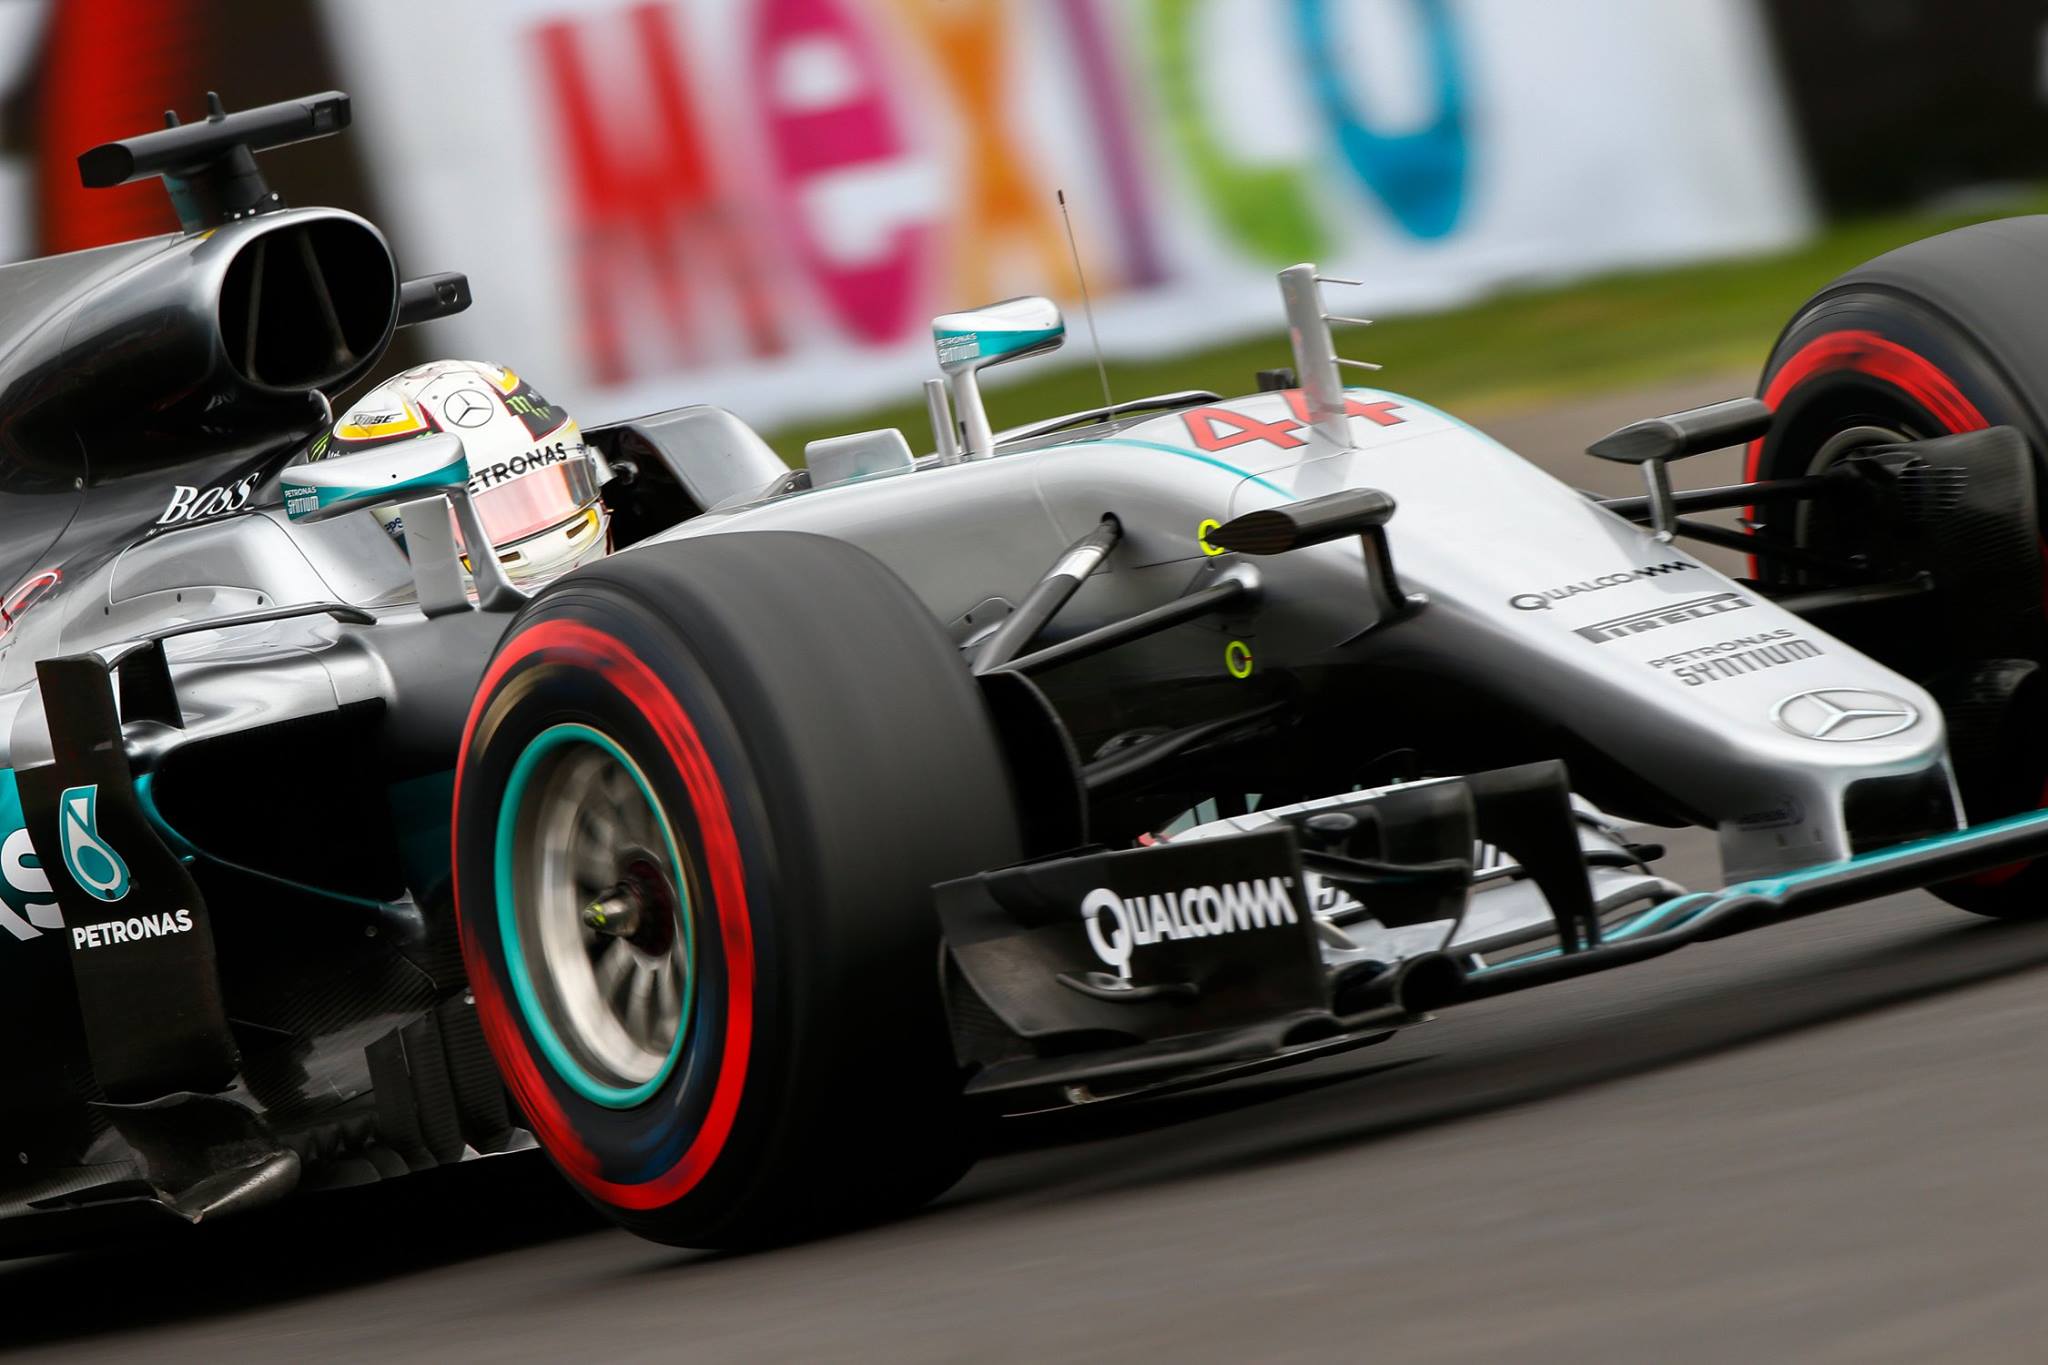 Hamilton leva a pole em Hermanos Rodriguez em treino disputado, No final Rosberg consegue entrar na primeira fila